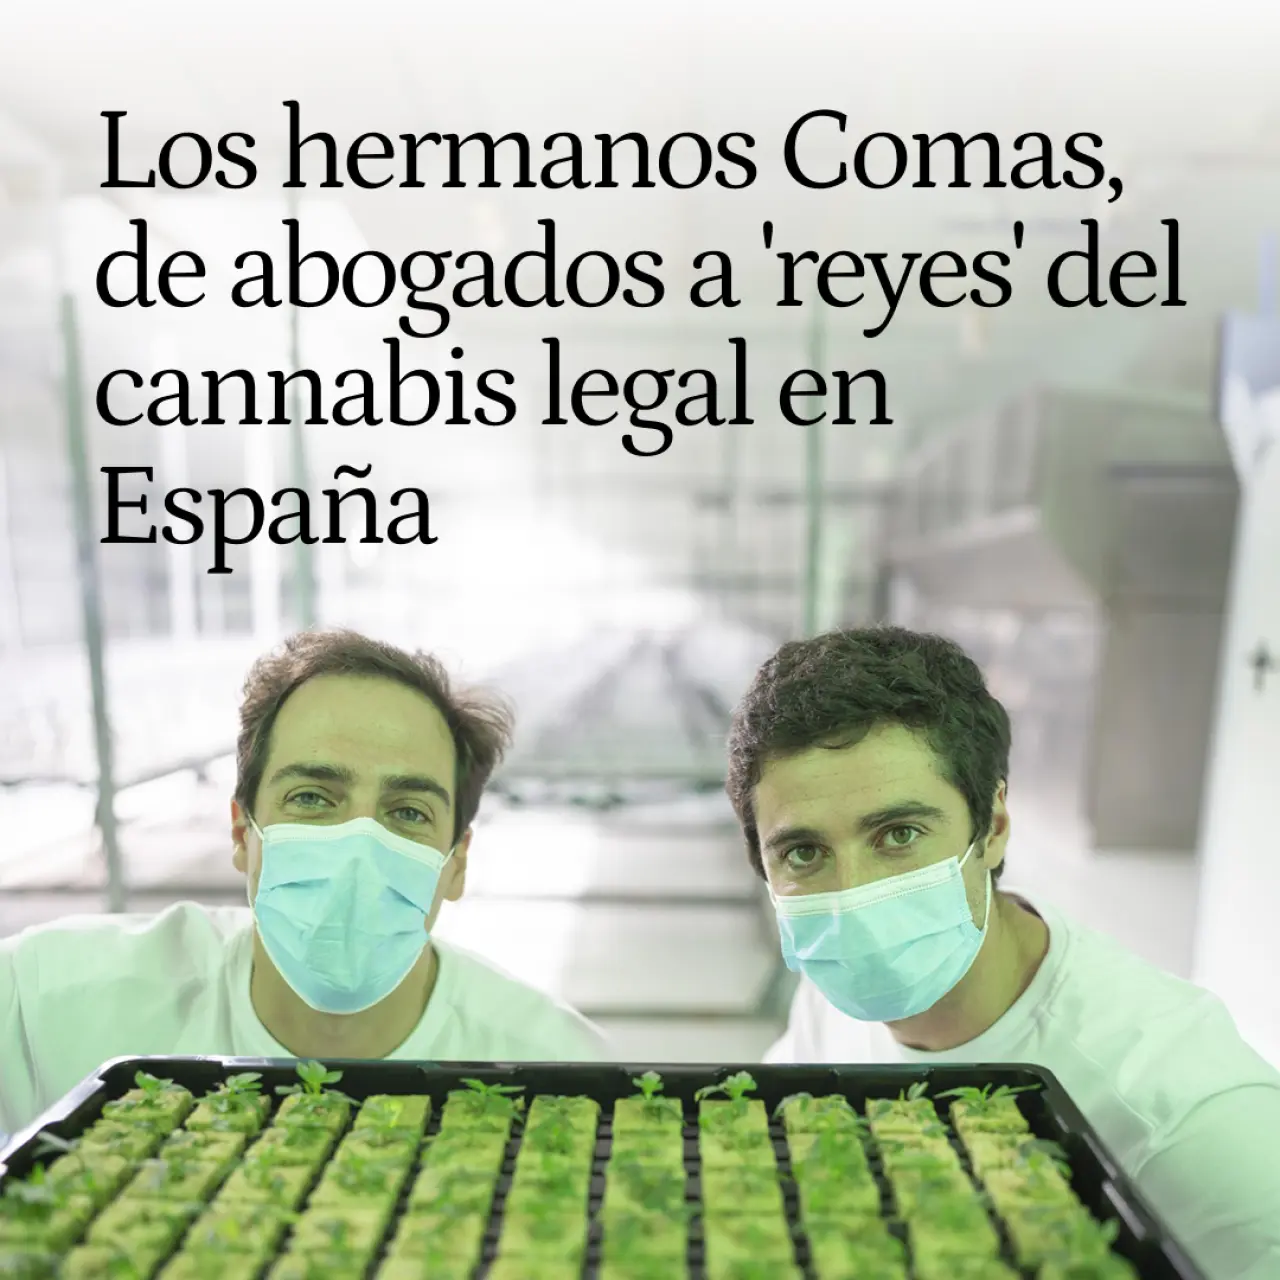 Los hermanos Comas, de abogados a 'reyes' del cannabis legal en España por querer curar el dolor crónico de un familiar